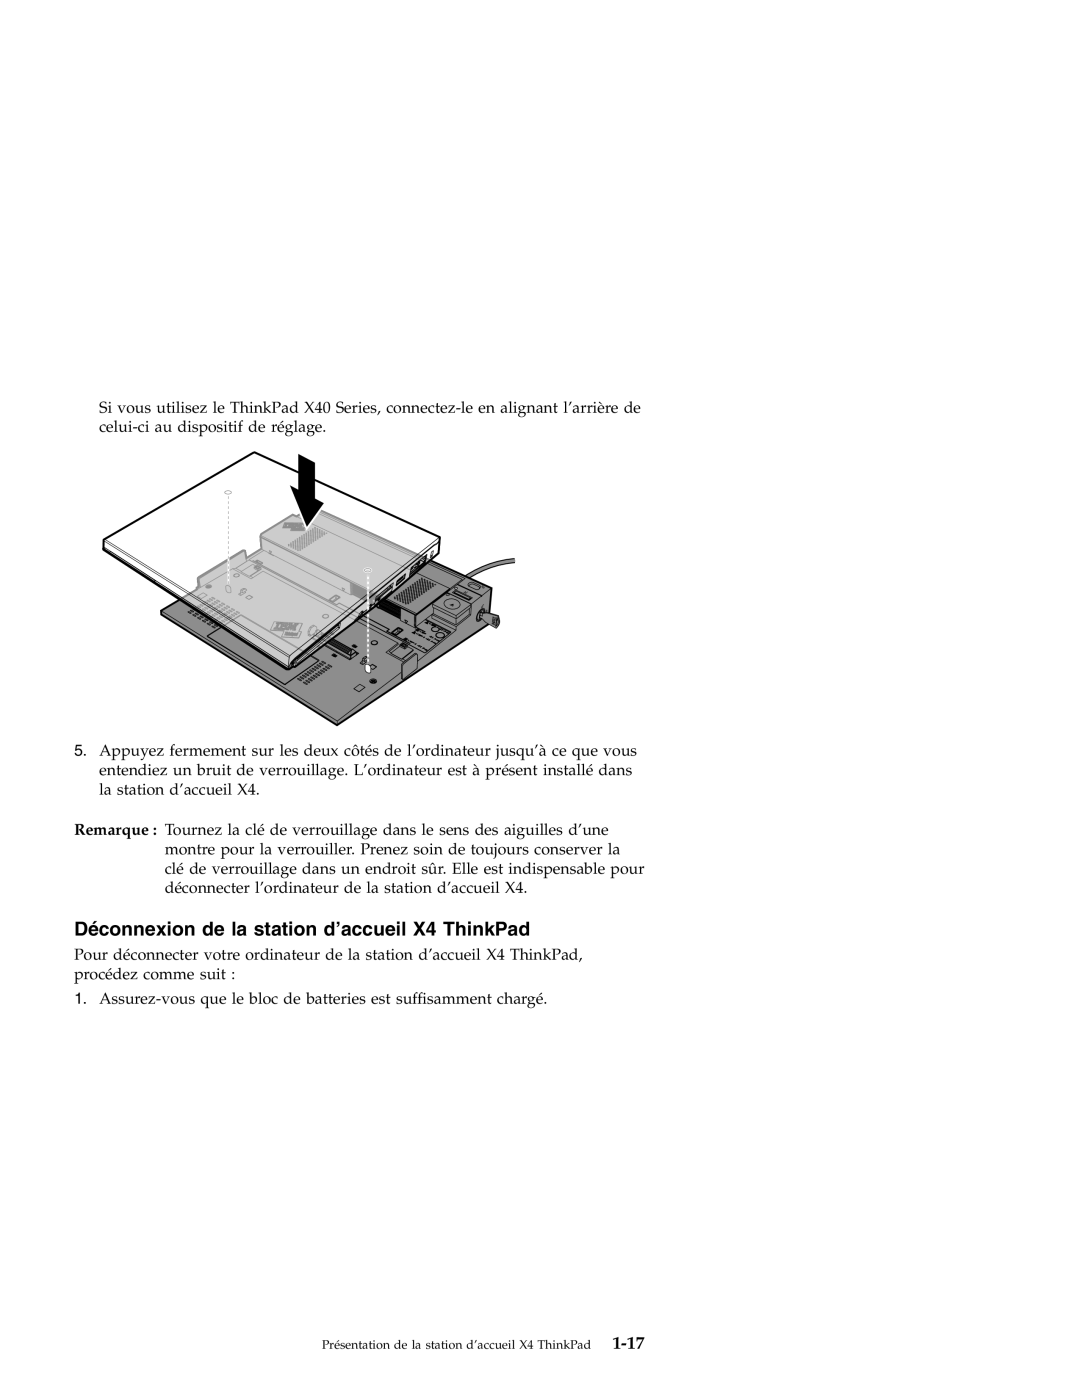 IBM manual Déconnexion de la station d’accueil X4 ThinkPad 